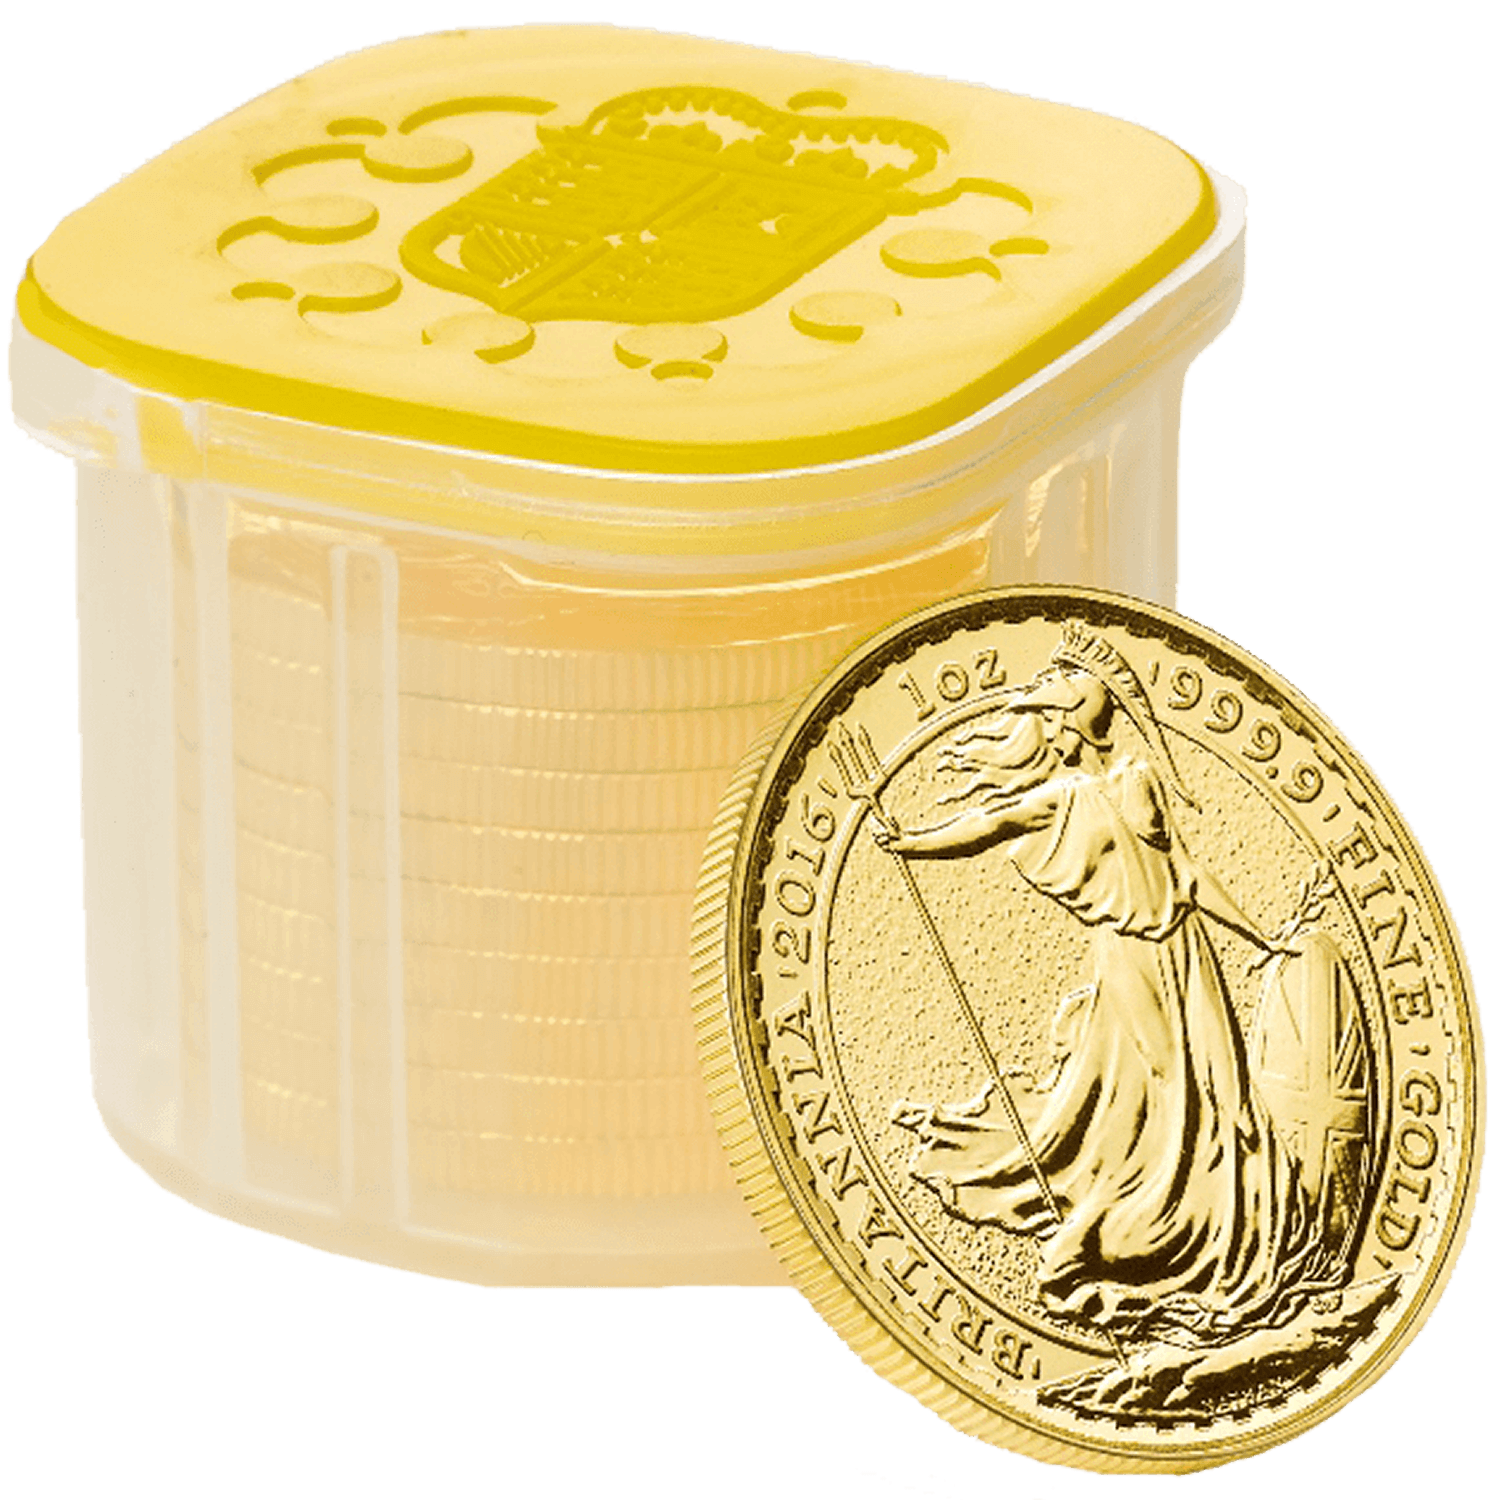 Britannia 2016 1 oz Gold Ten Coin Tube